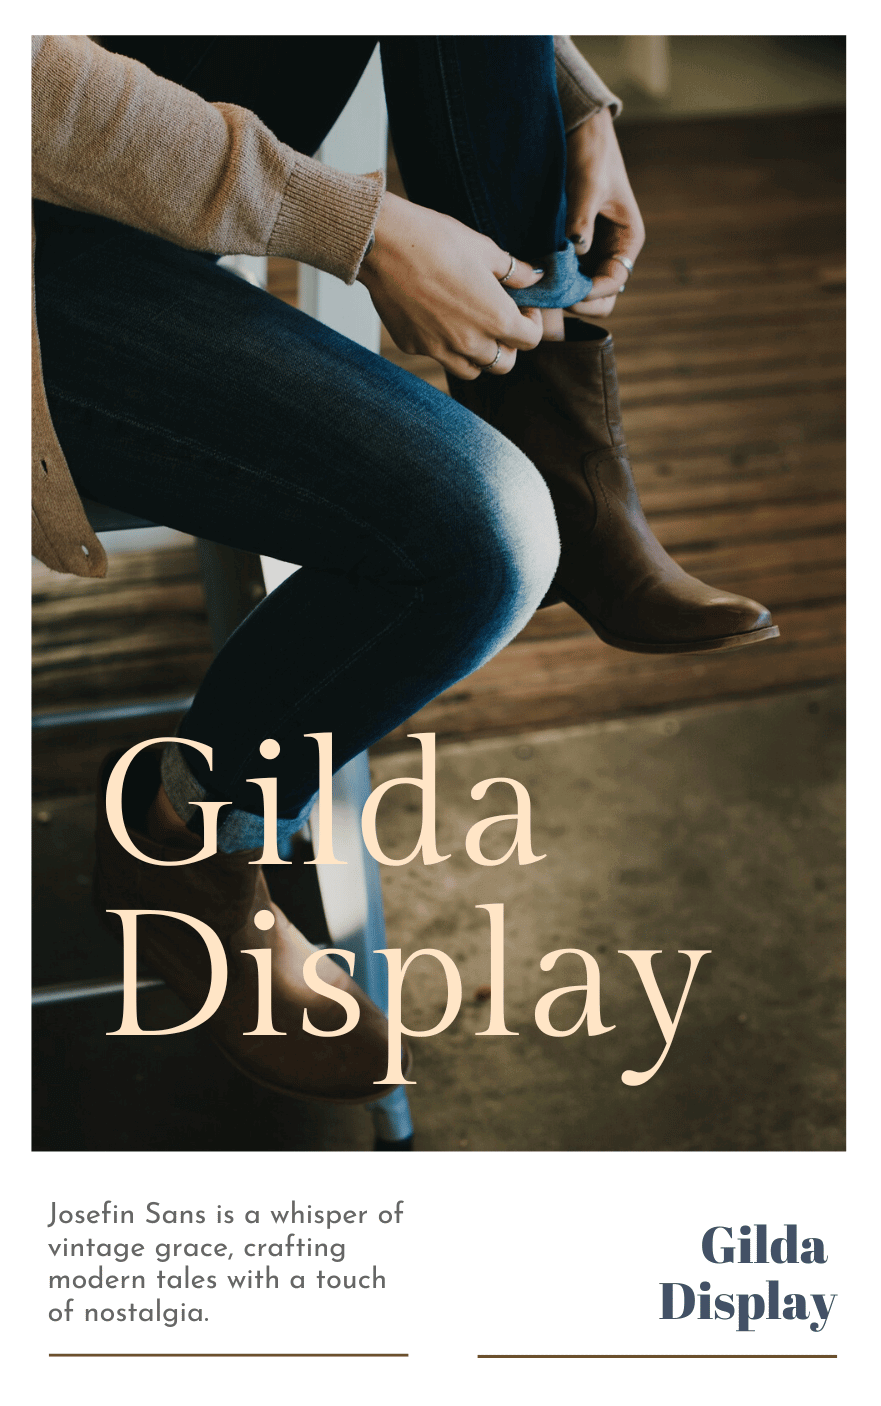 Josefin Sans Font Pairing With Gilda Display